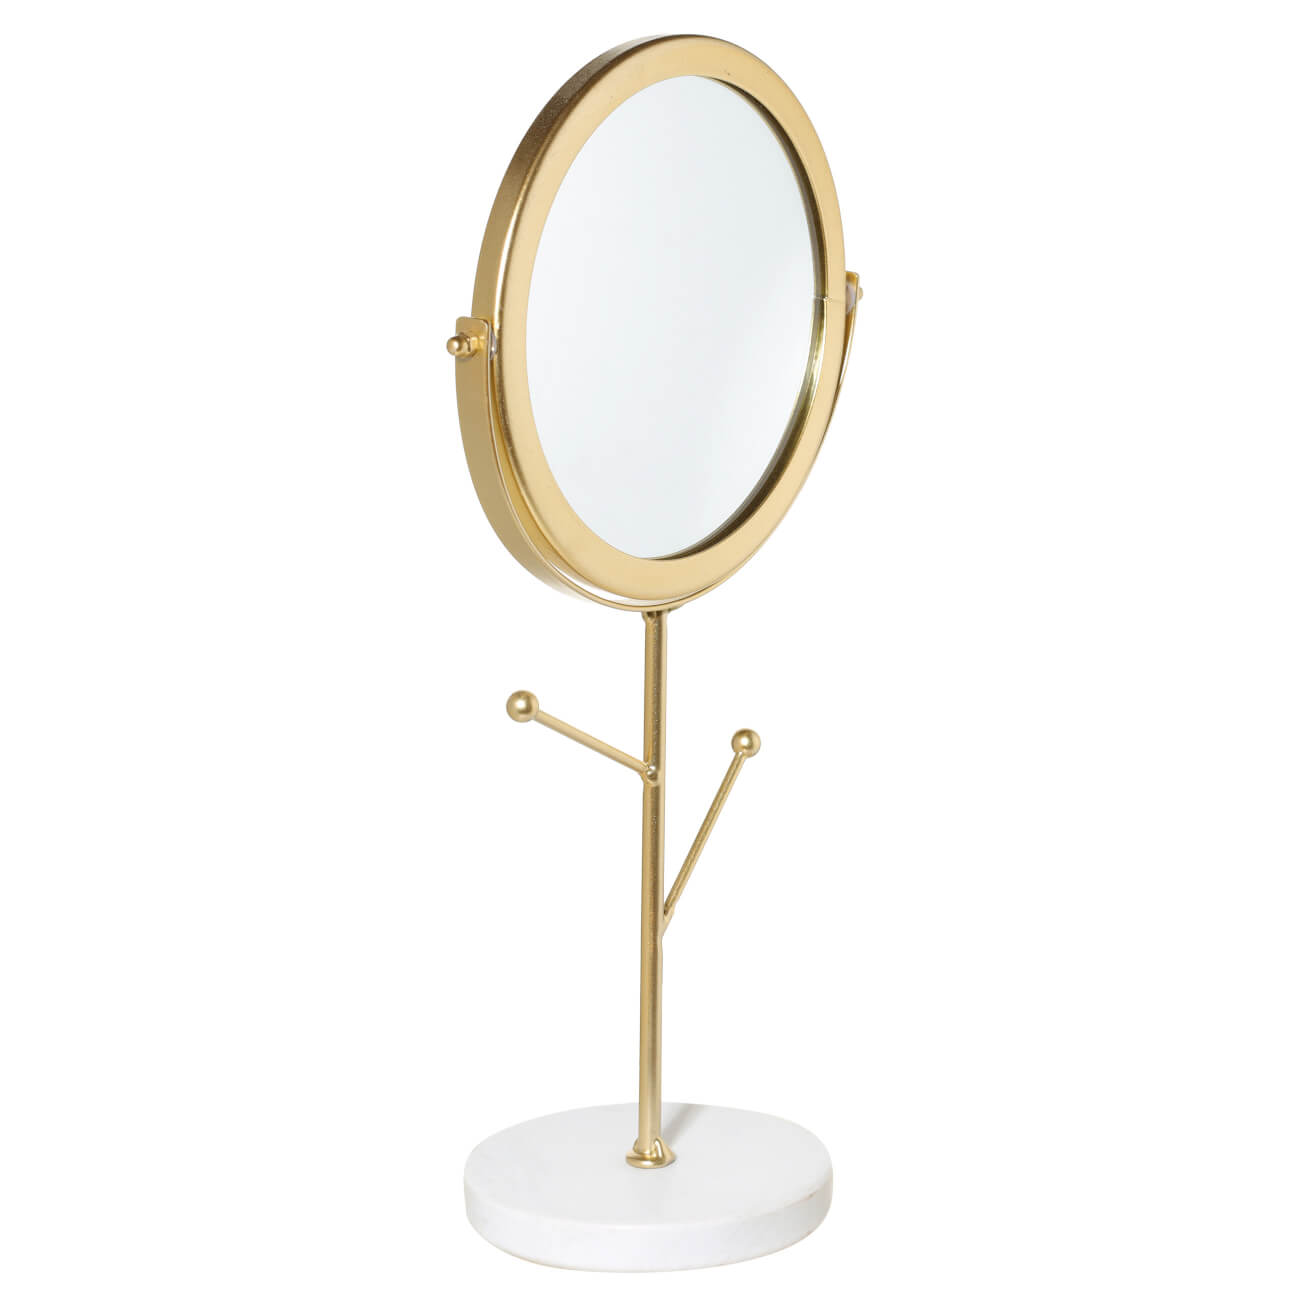 Зеркало настольное, 30 см, на ножке, с держателями для украшений, металл, золотистое, Maniera зеркало косметическое настольное two dolfins увеличительное 17 см